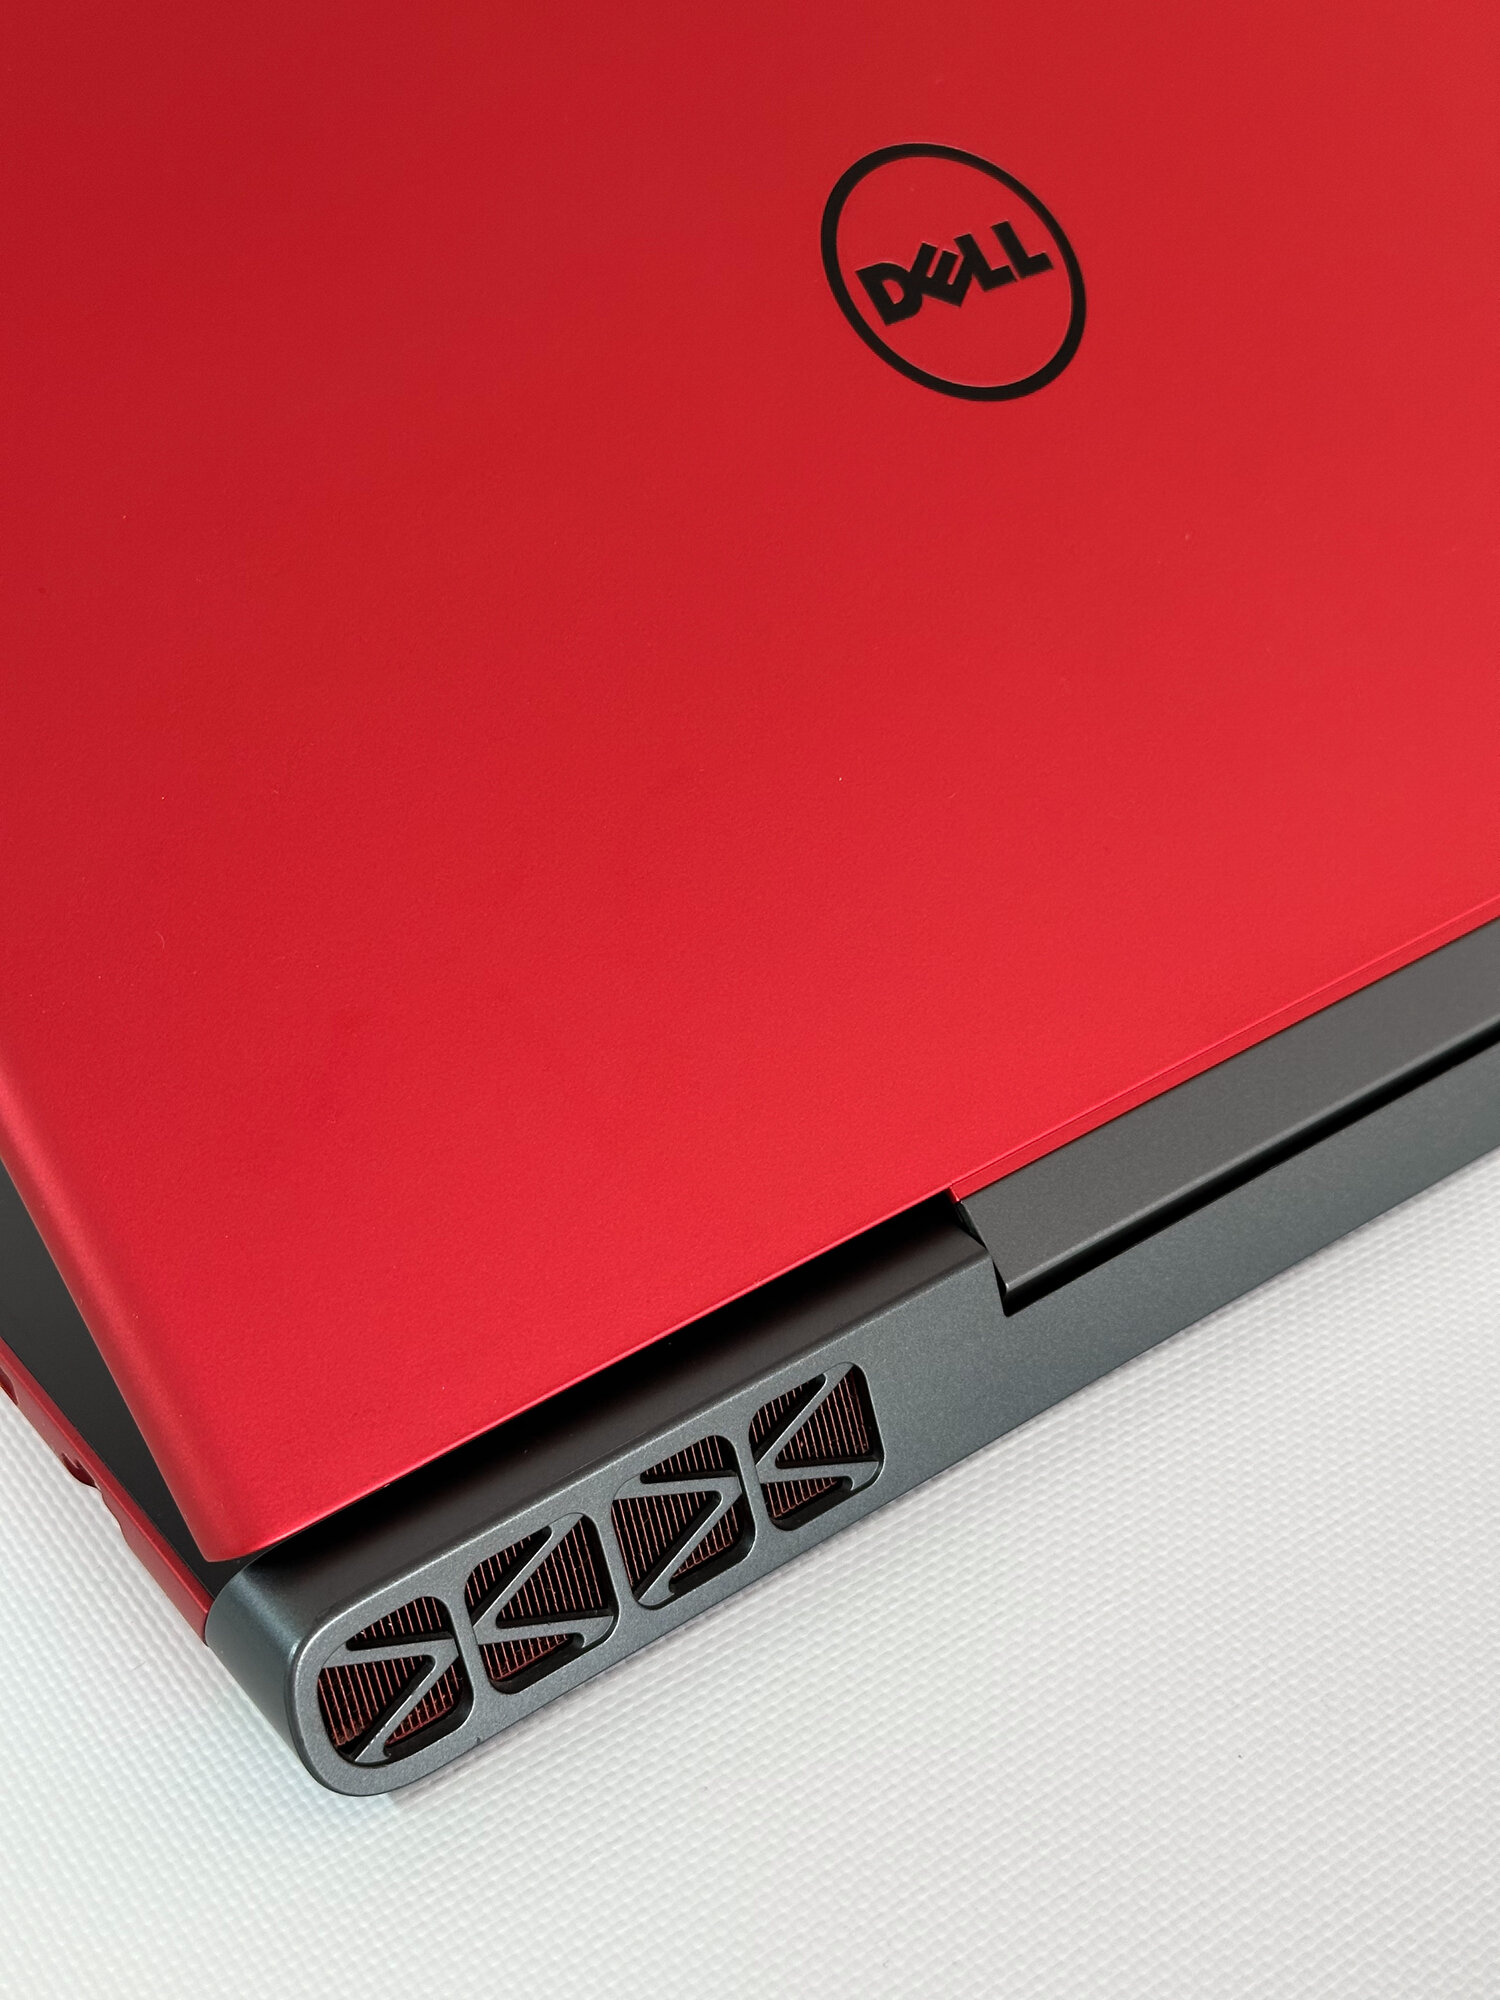 Витринный Игровой Ноутбук Dell 7566 i5-6300HQ, GTX 960m (4Gb), 15,6"